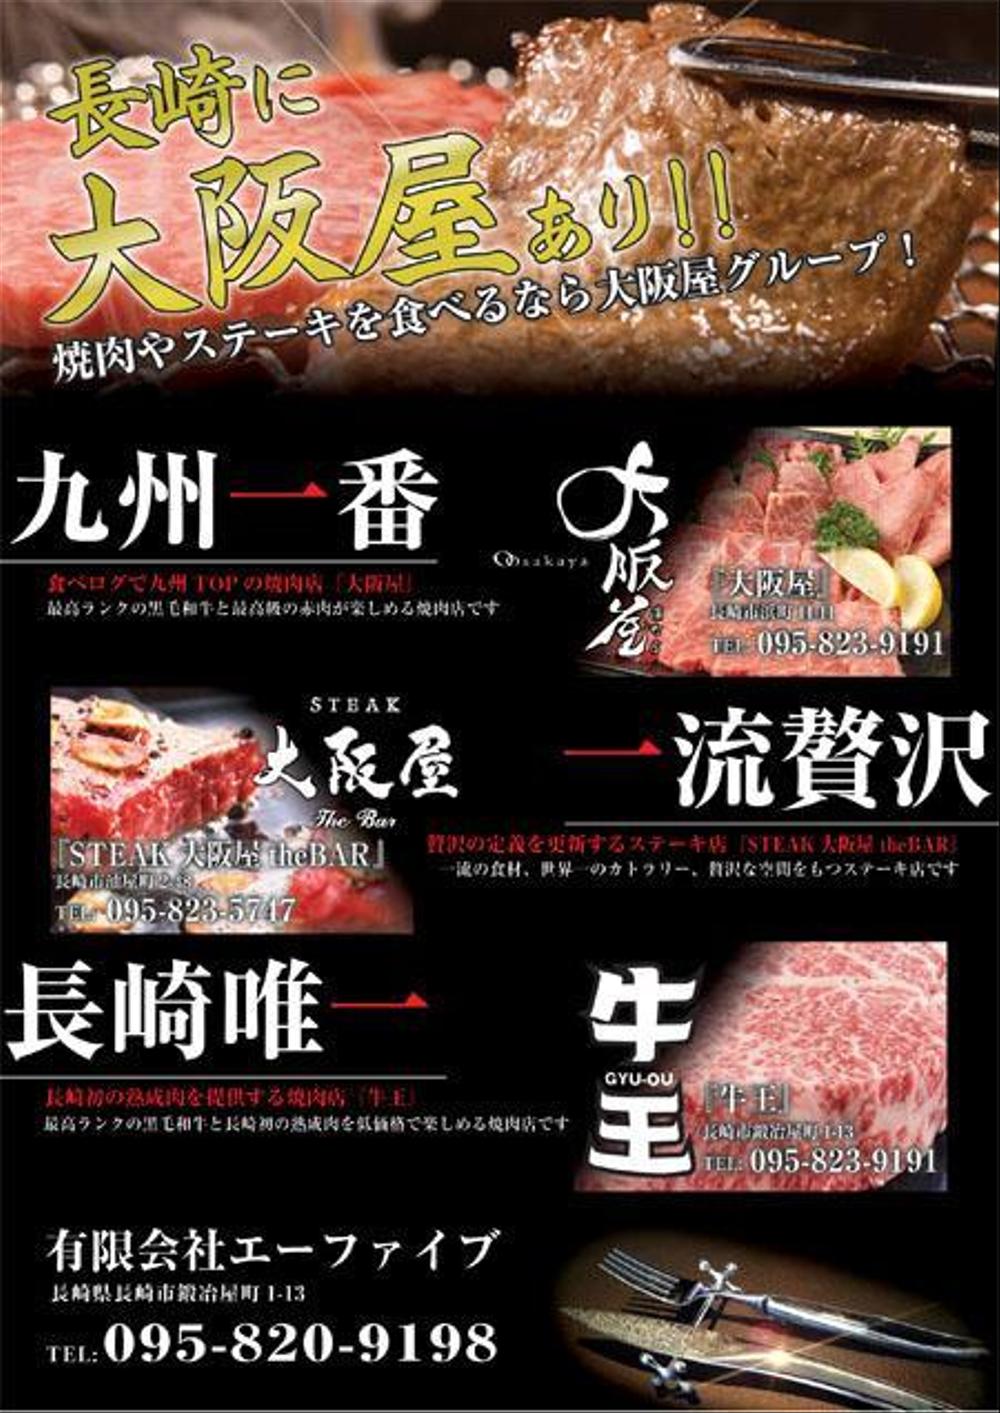 『焼肉』『ステーキ』『熟成肉』3店舗合同記事広告デザイン